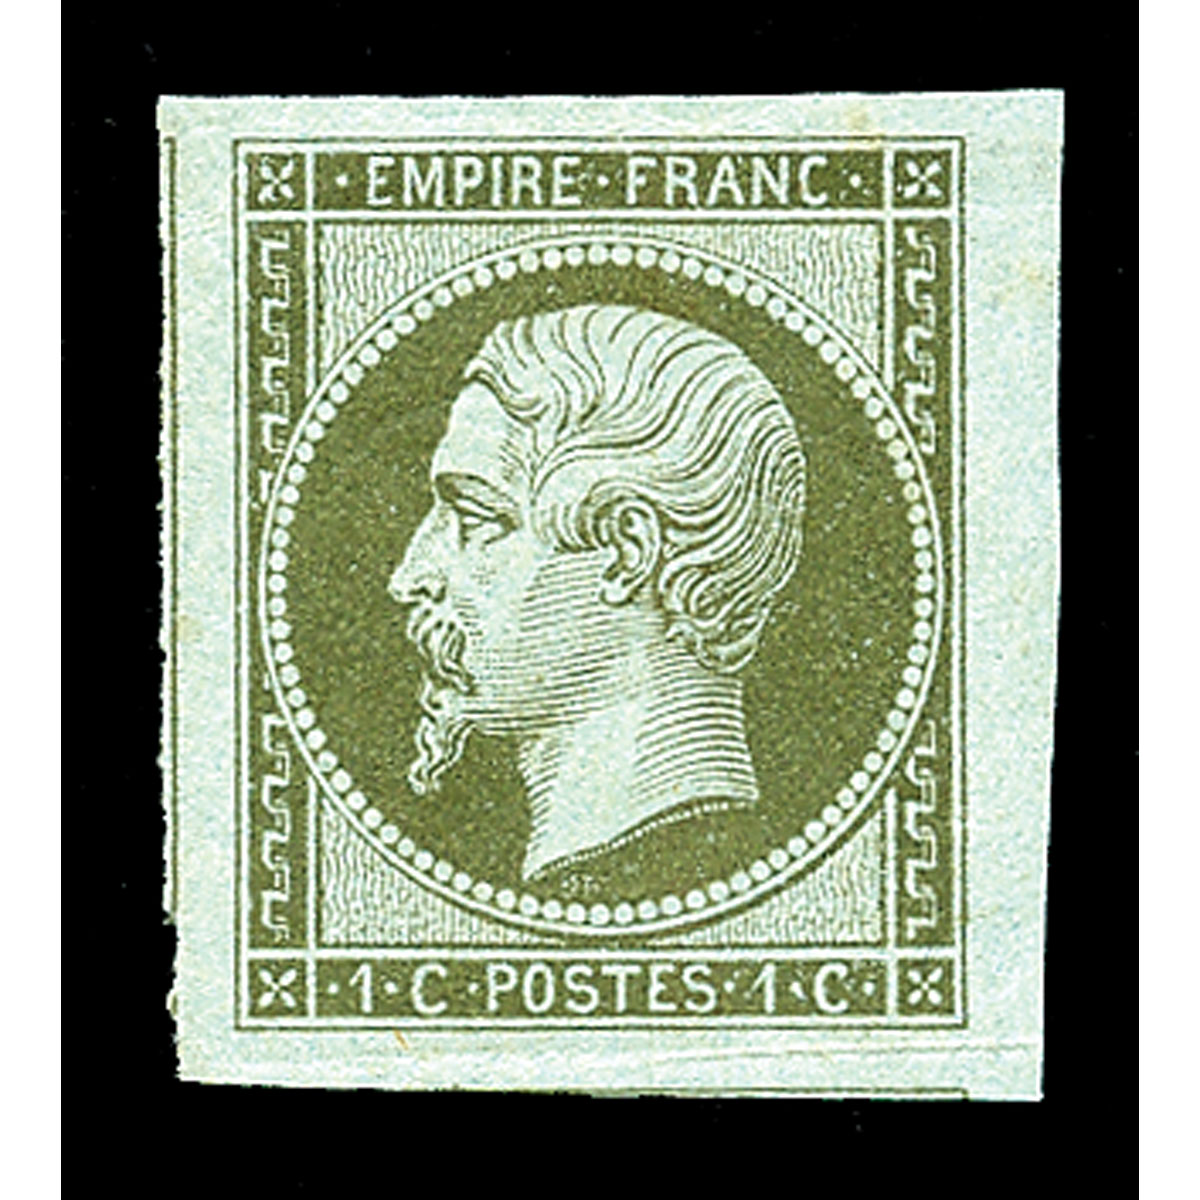 FRANCE N°19b TYPE NAPOLÉON 1C MORDORÉ, TIMBRE NEUF** SIGNÉ BRUN - 1865, RARE